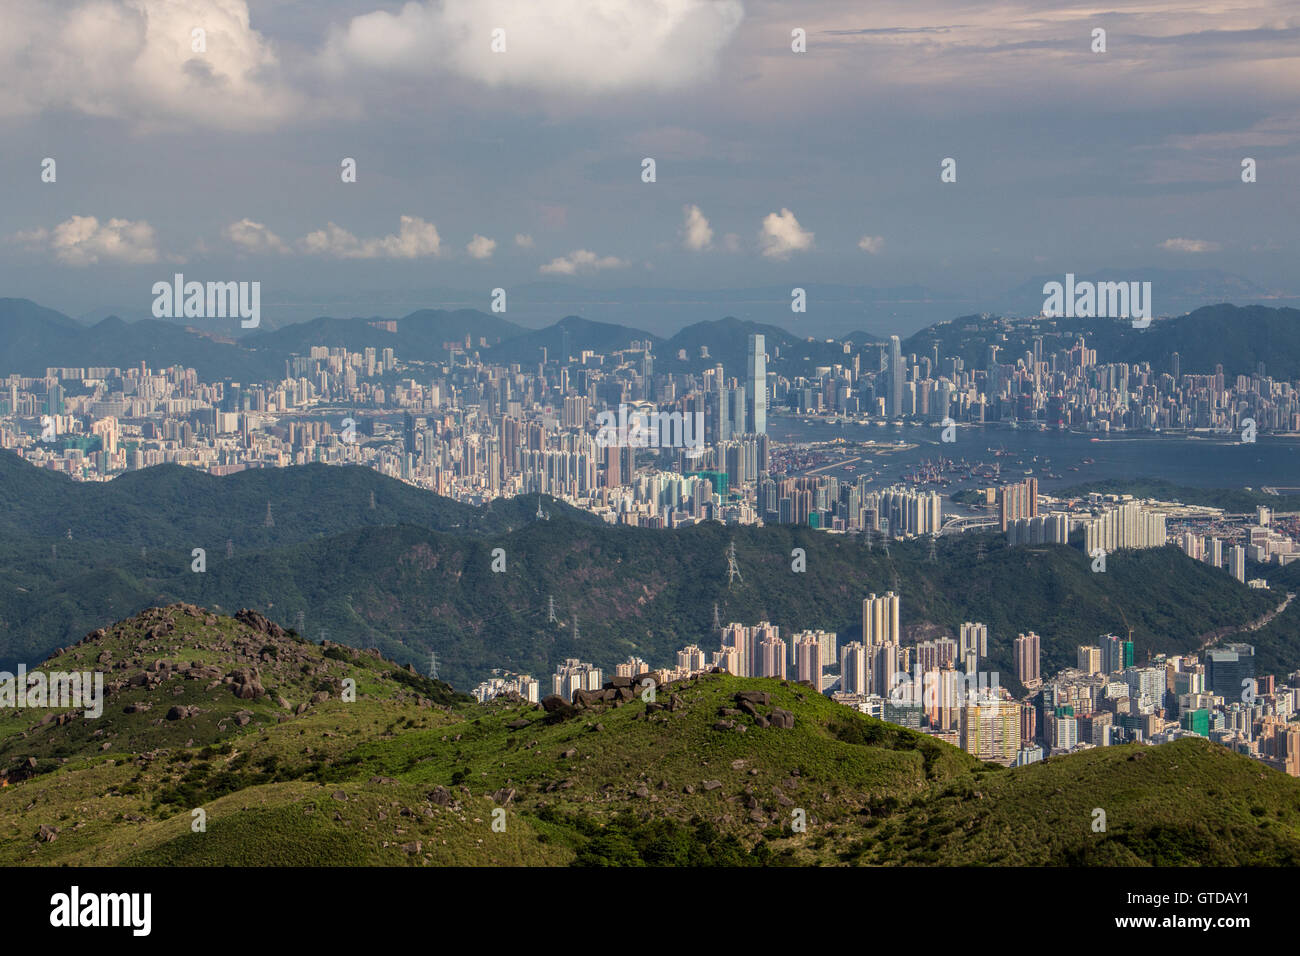 Hong Kong aus einer anderen Perspektive: die Welt berühmten Beton-Dschungel von Schichten von grünen, wörtliche Dschungel umgeben. Stockfoto